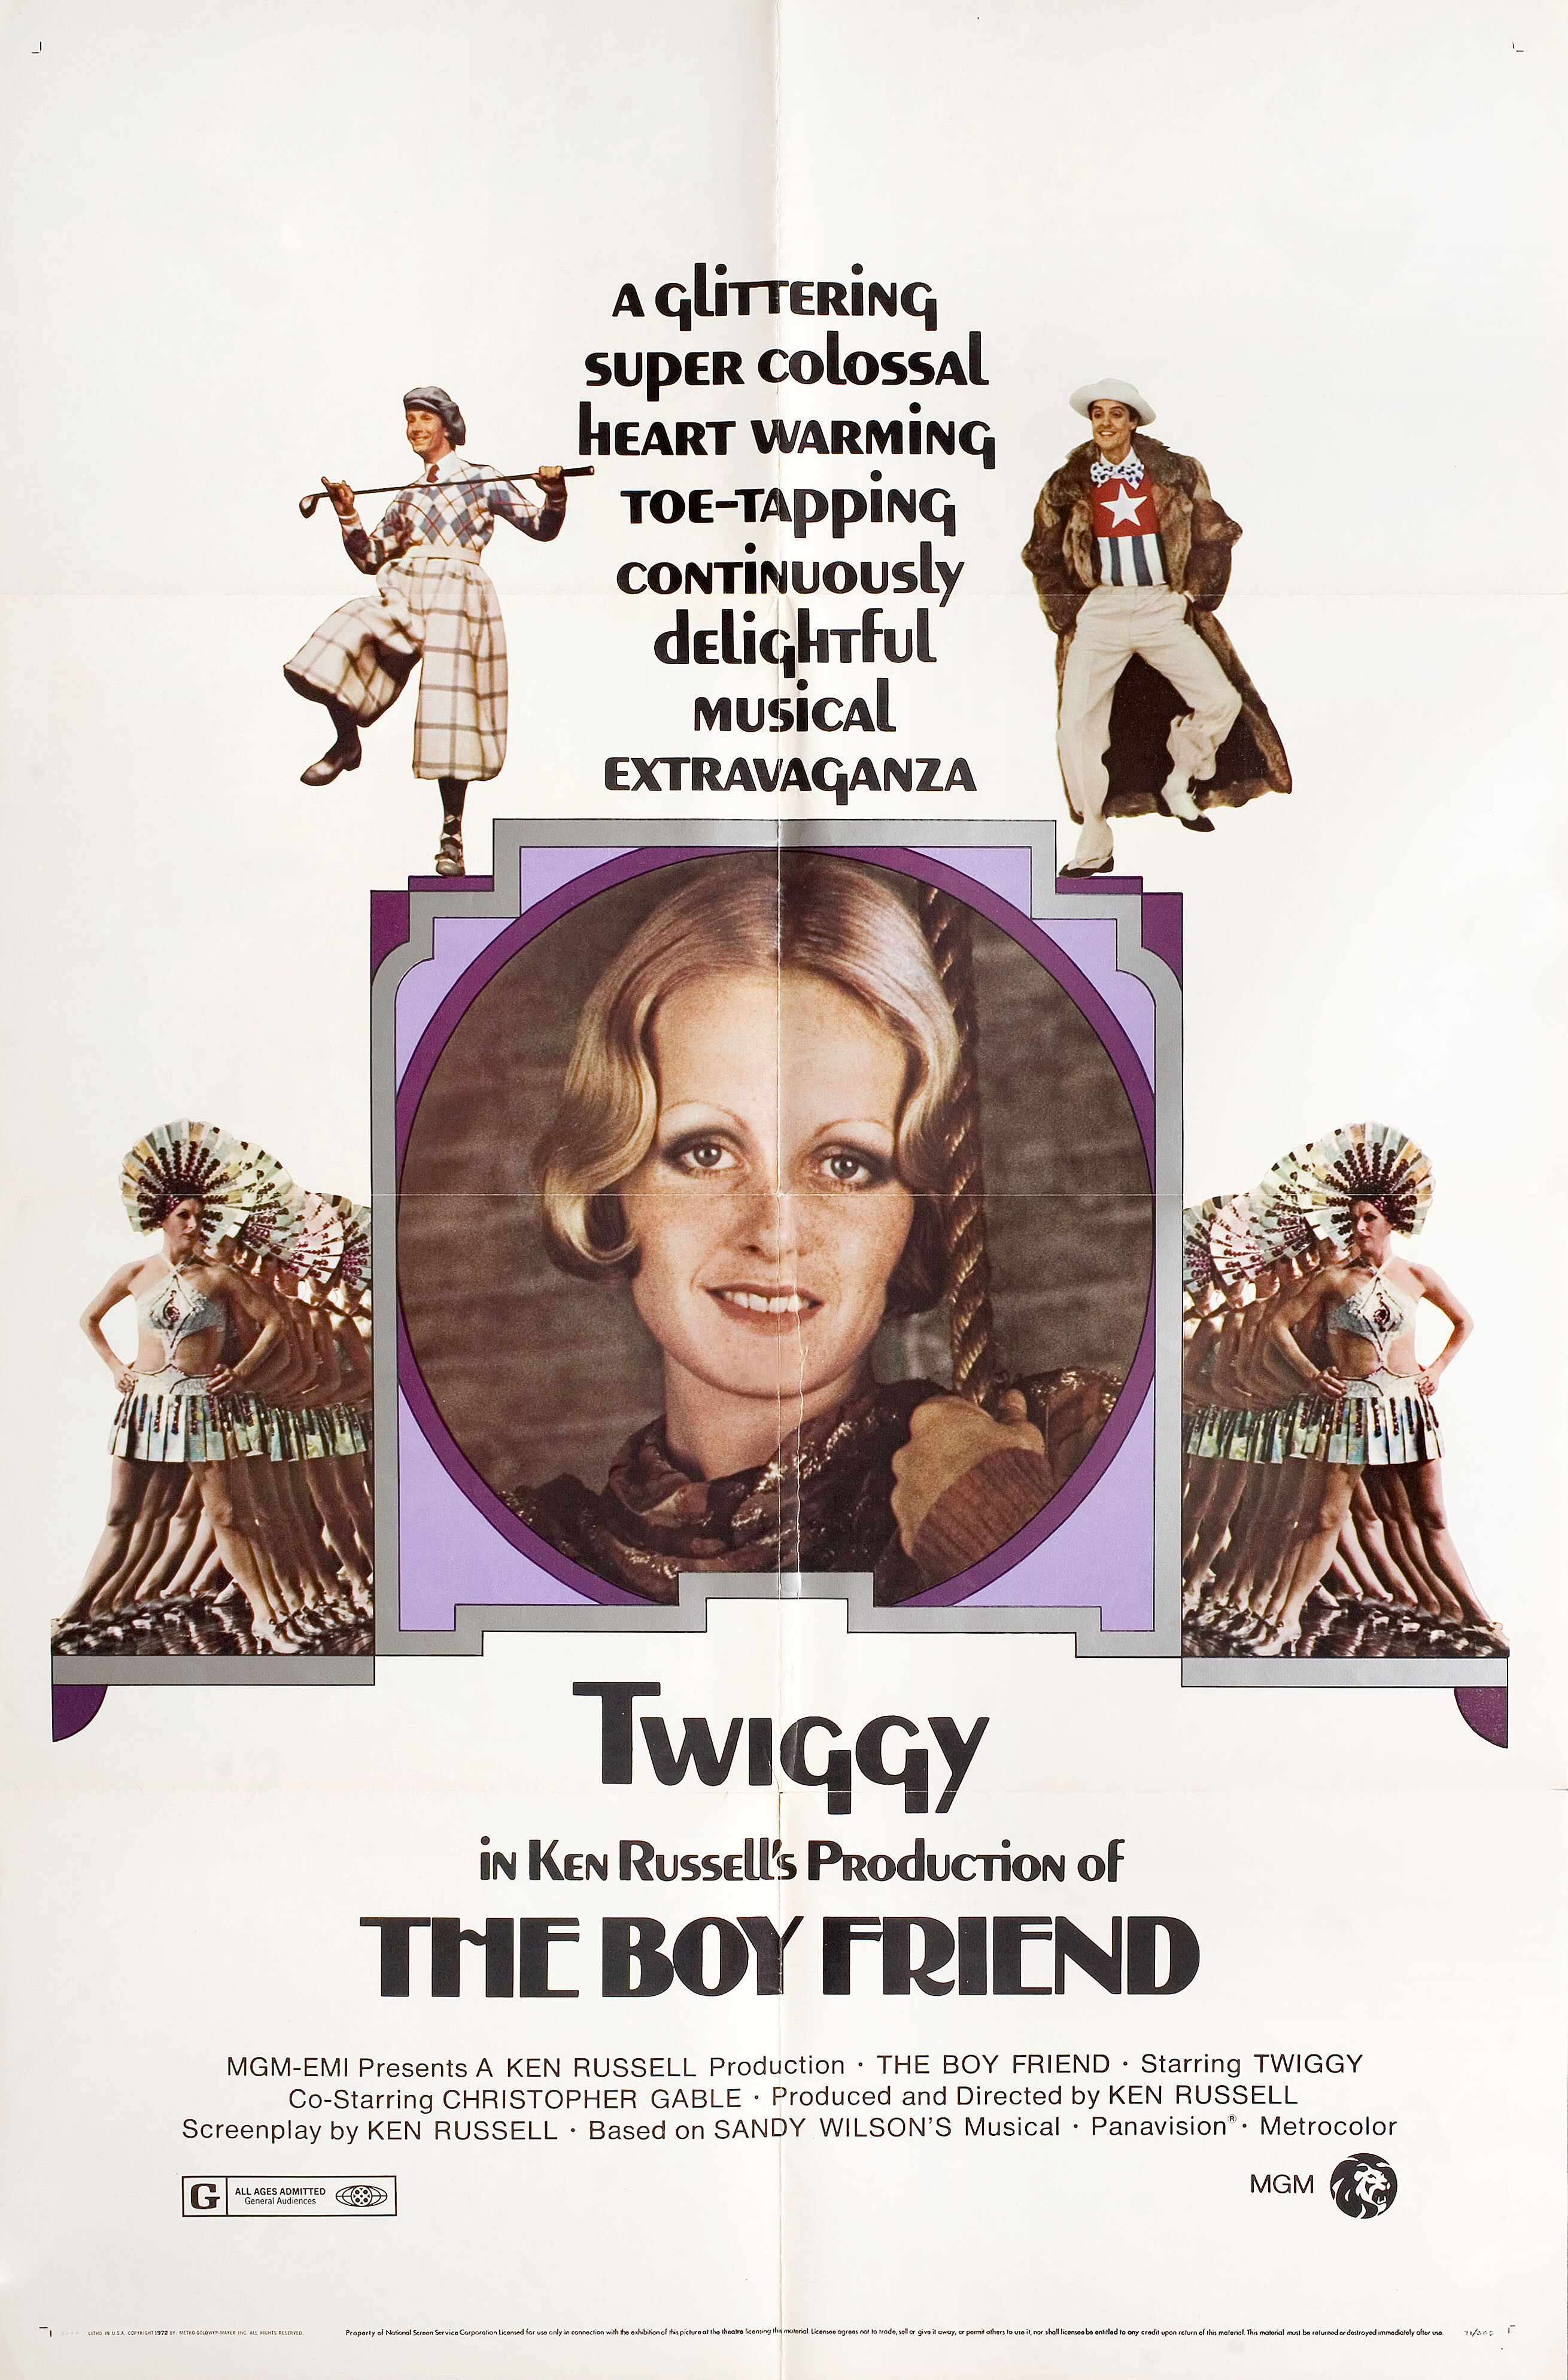 Приятель (The Boy Friend, 1971), режиссёр Кен Рассел, постер к фильму в стиле ар-деко (США, 1971 год)